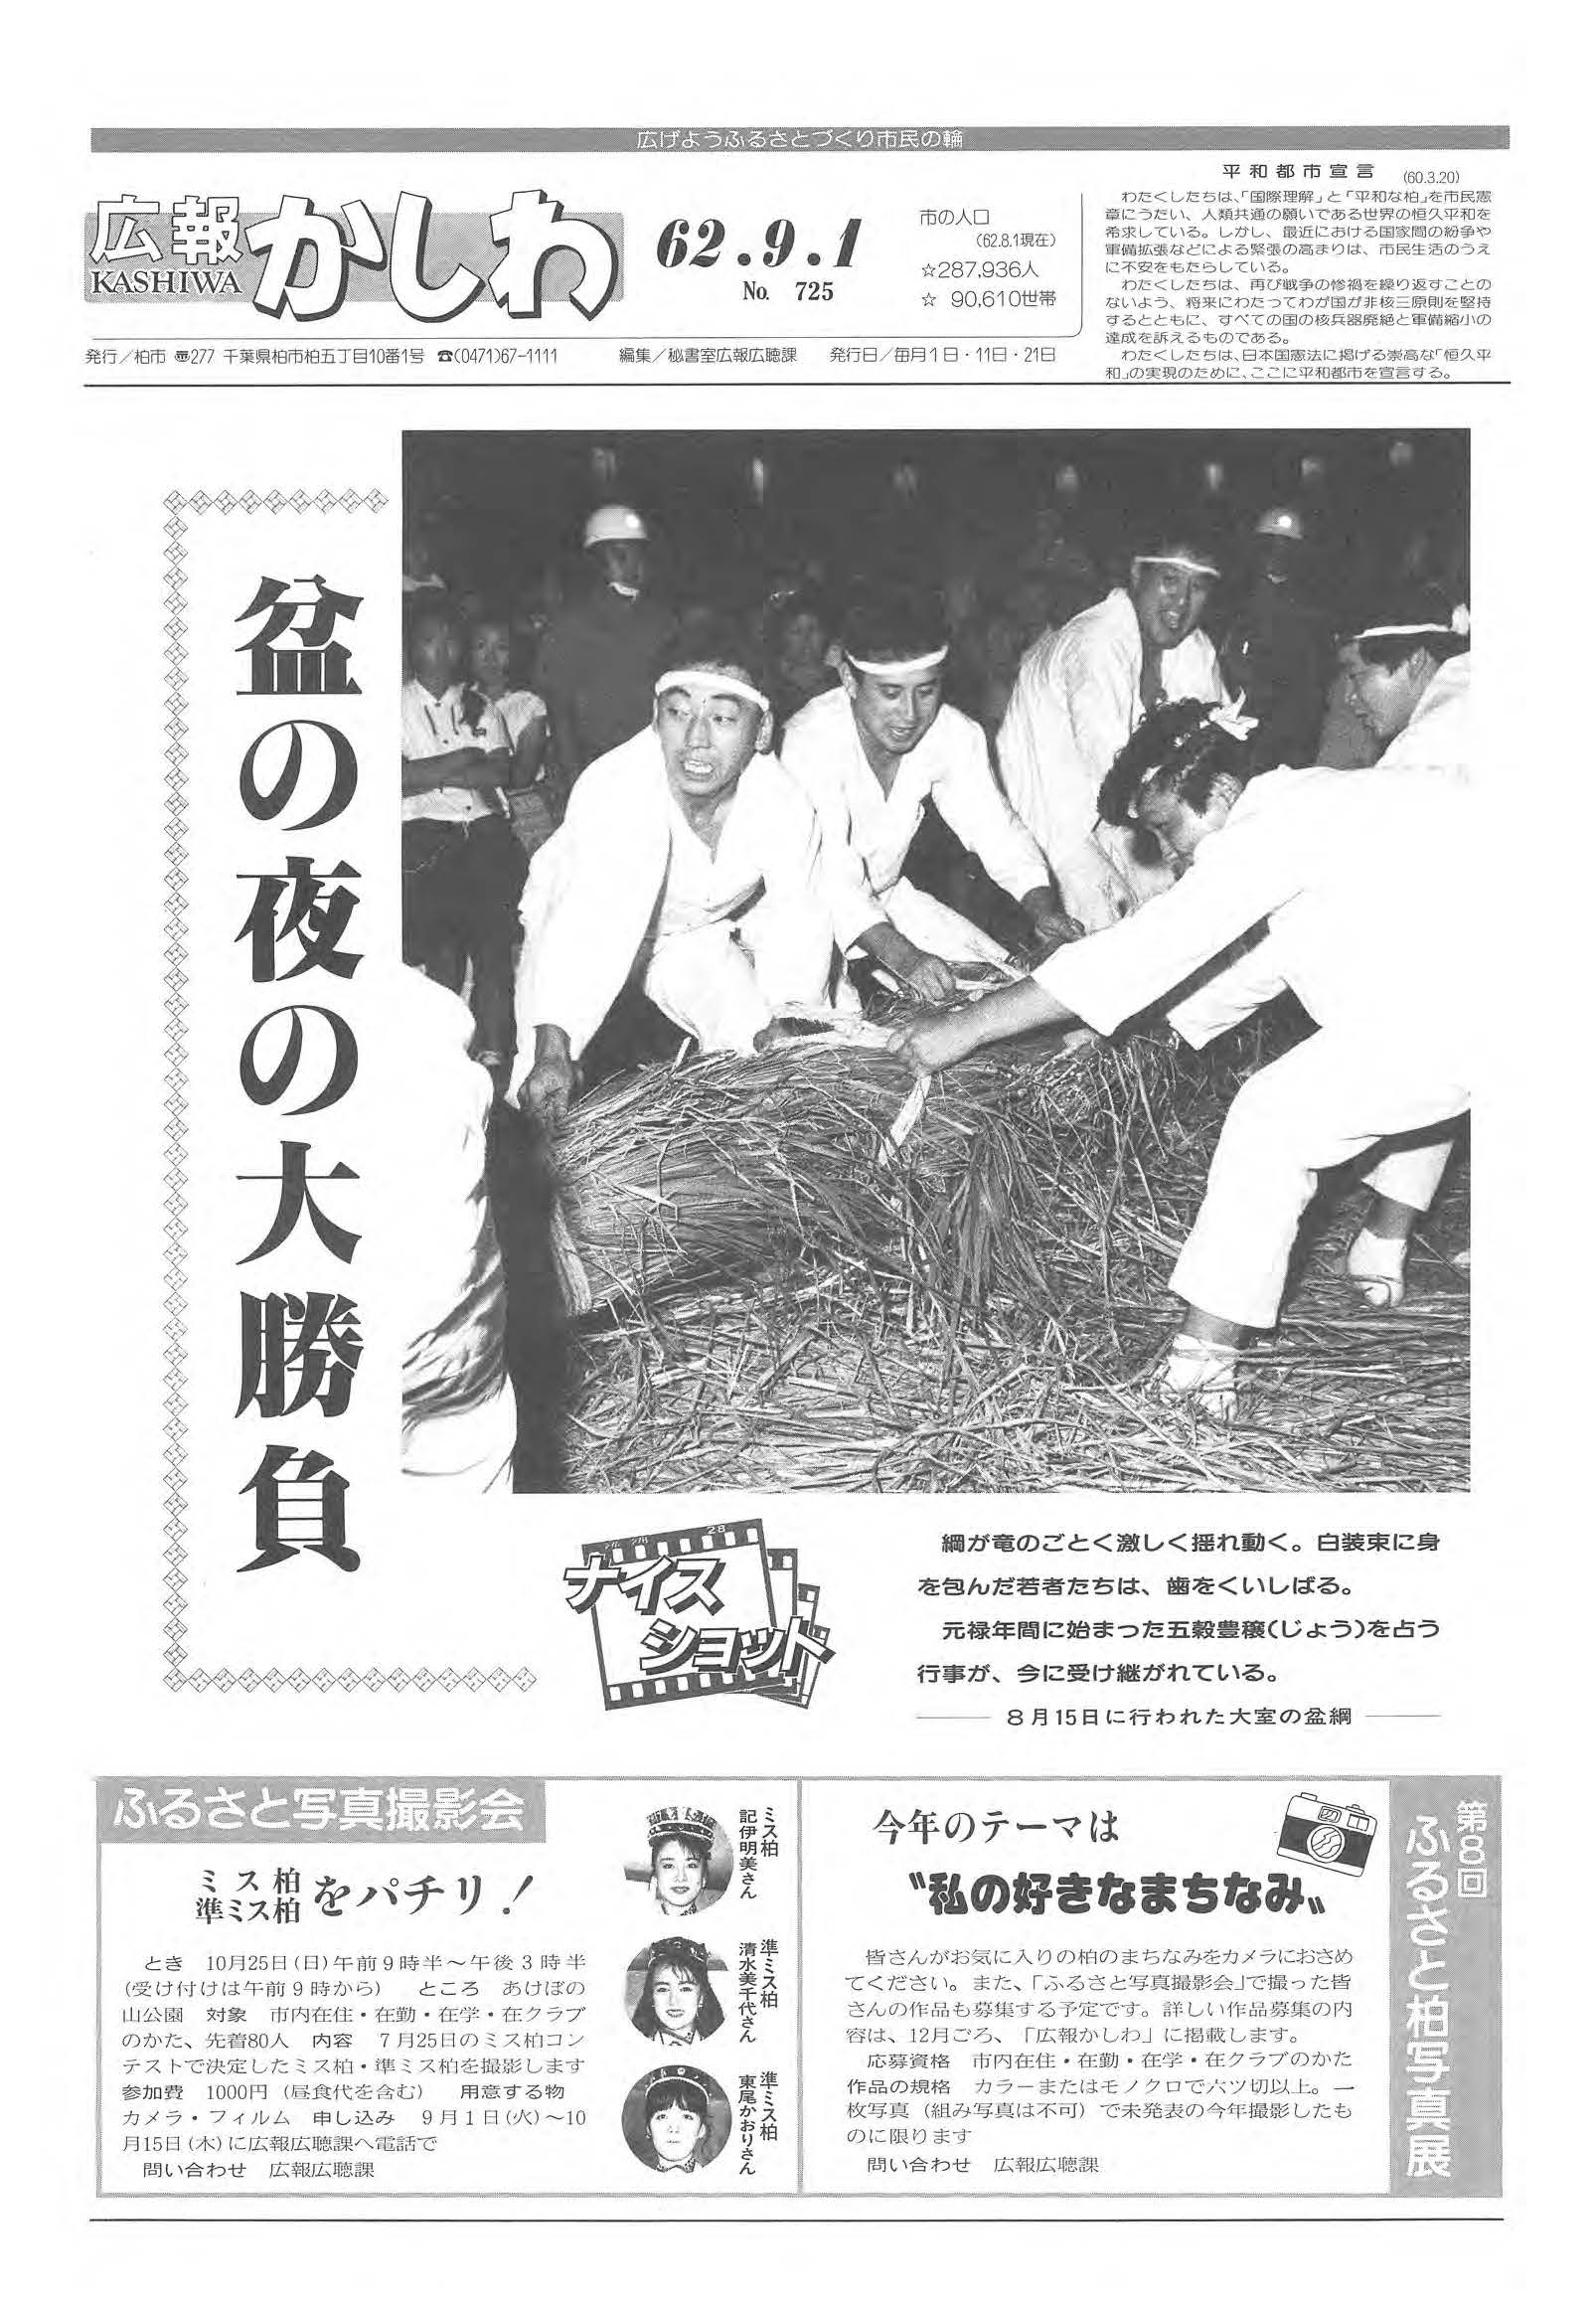 広報かしわ　昭和62年9月1日発行　725号